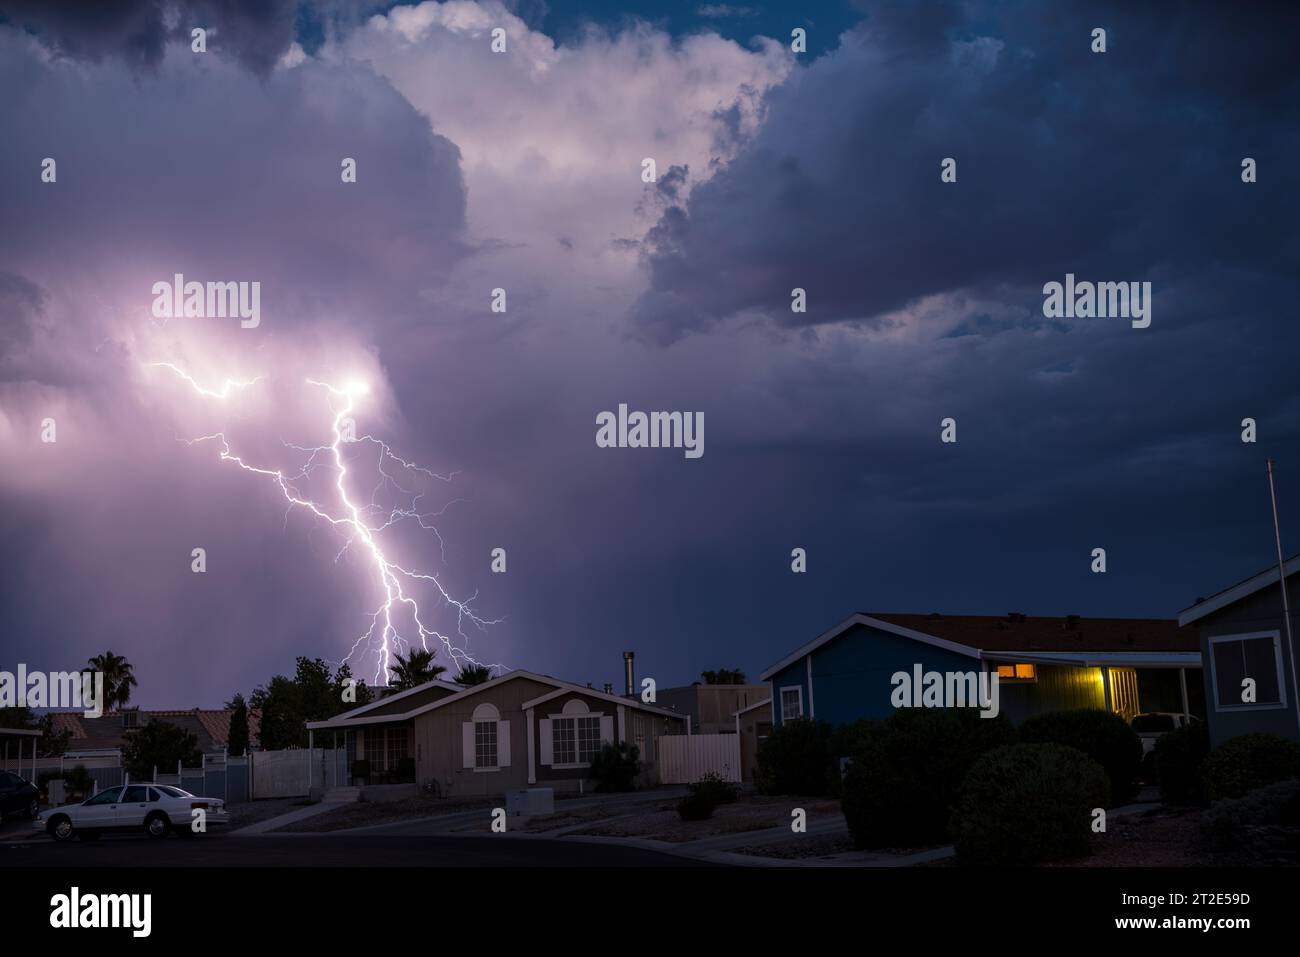 Traumhafte Vision eines Blitzeinschlags direkt hinter einer Nachbarschaft aus unscheinbaren modularen Häusern in der blauen Stunde der Dämmerung. Stockfoto